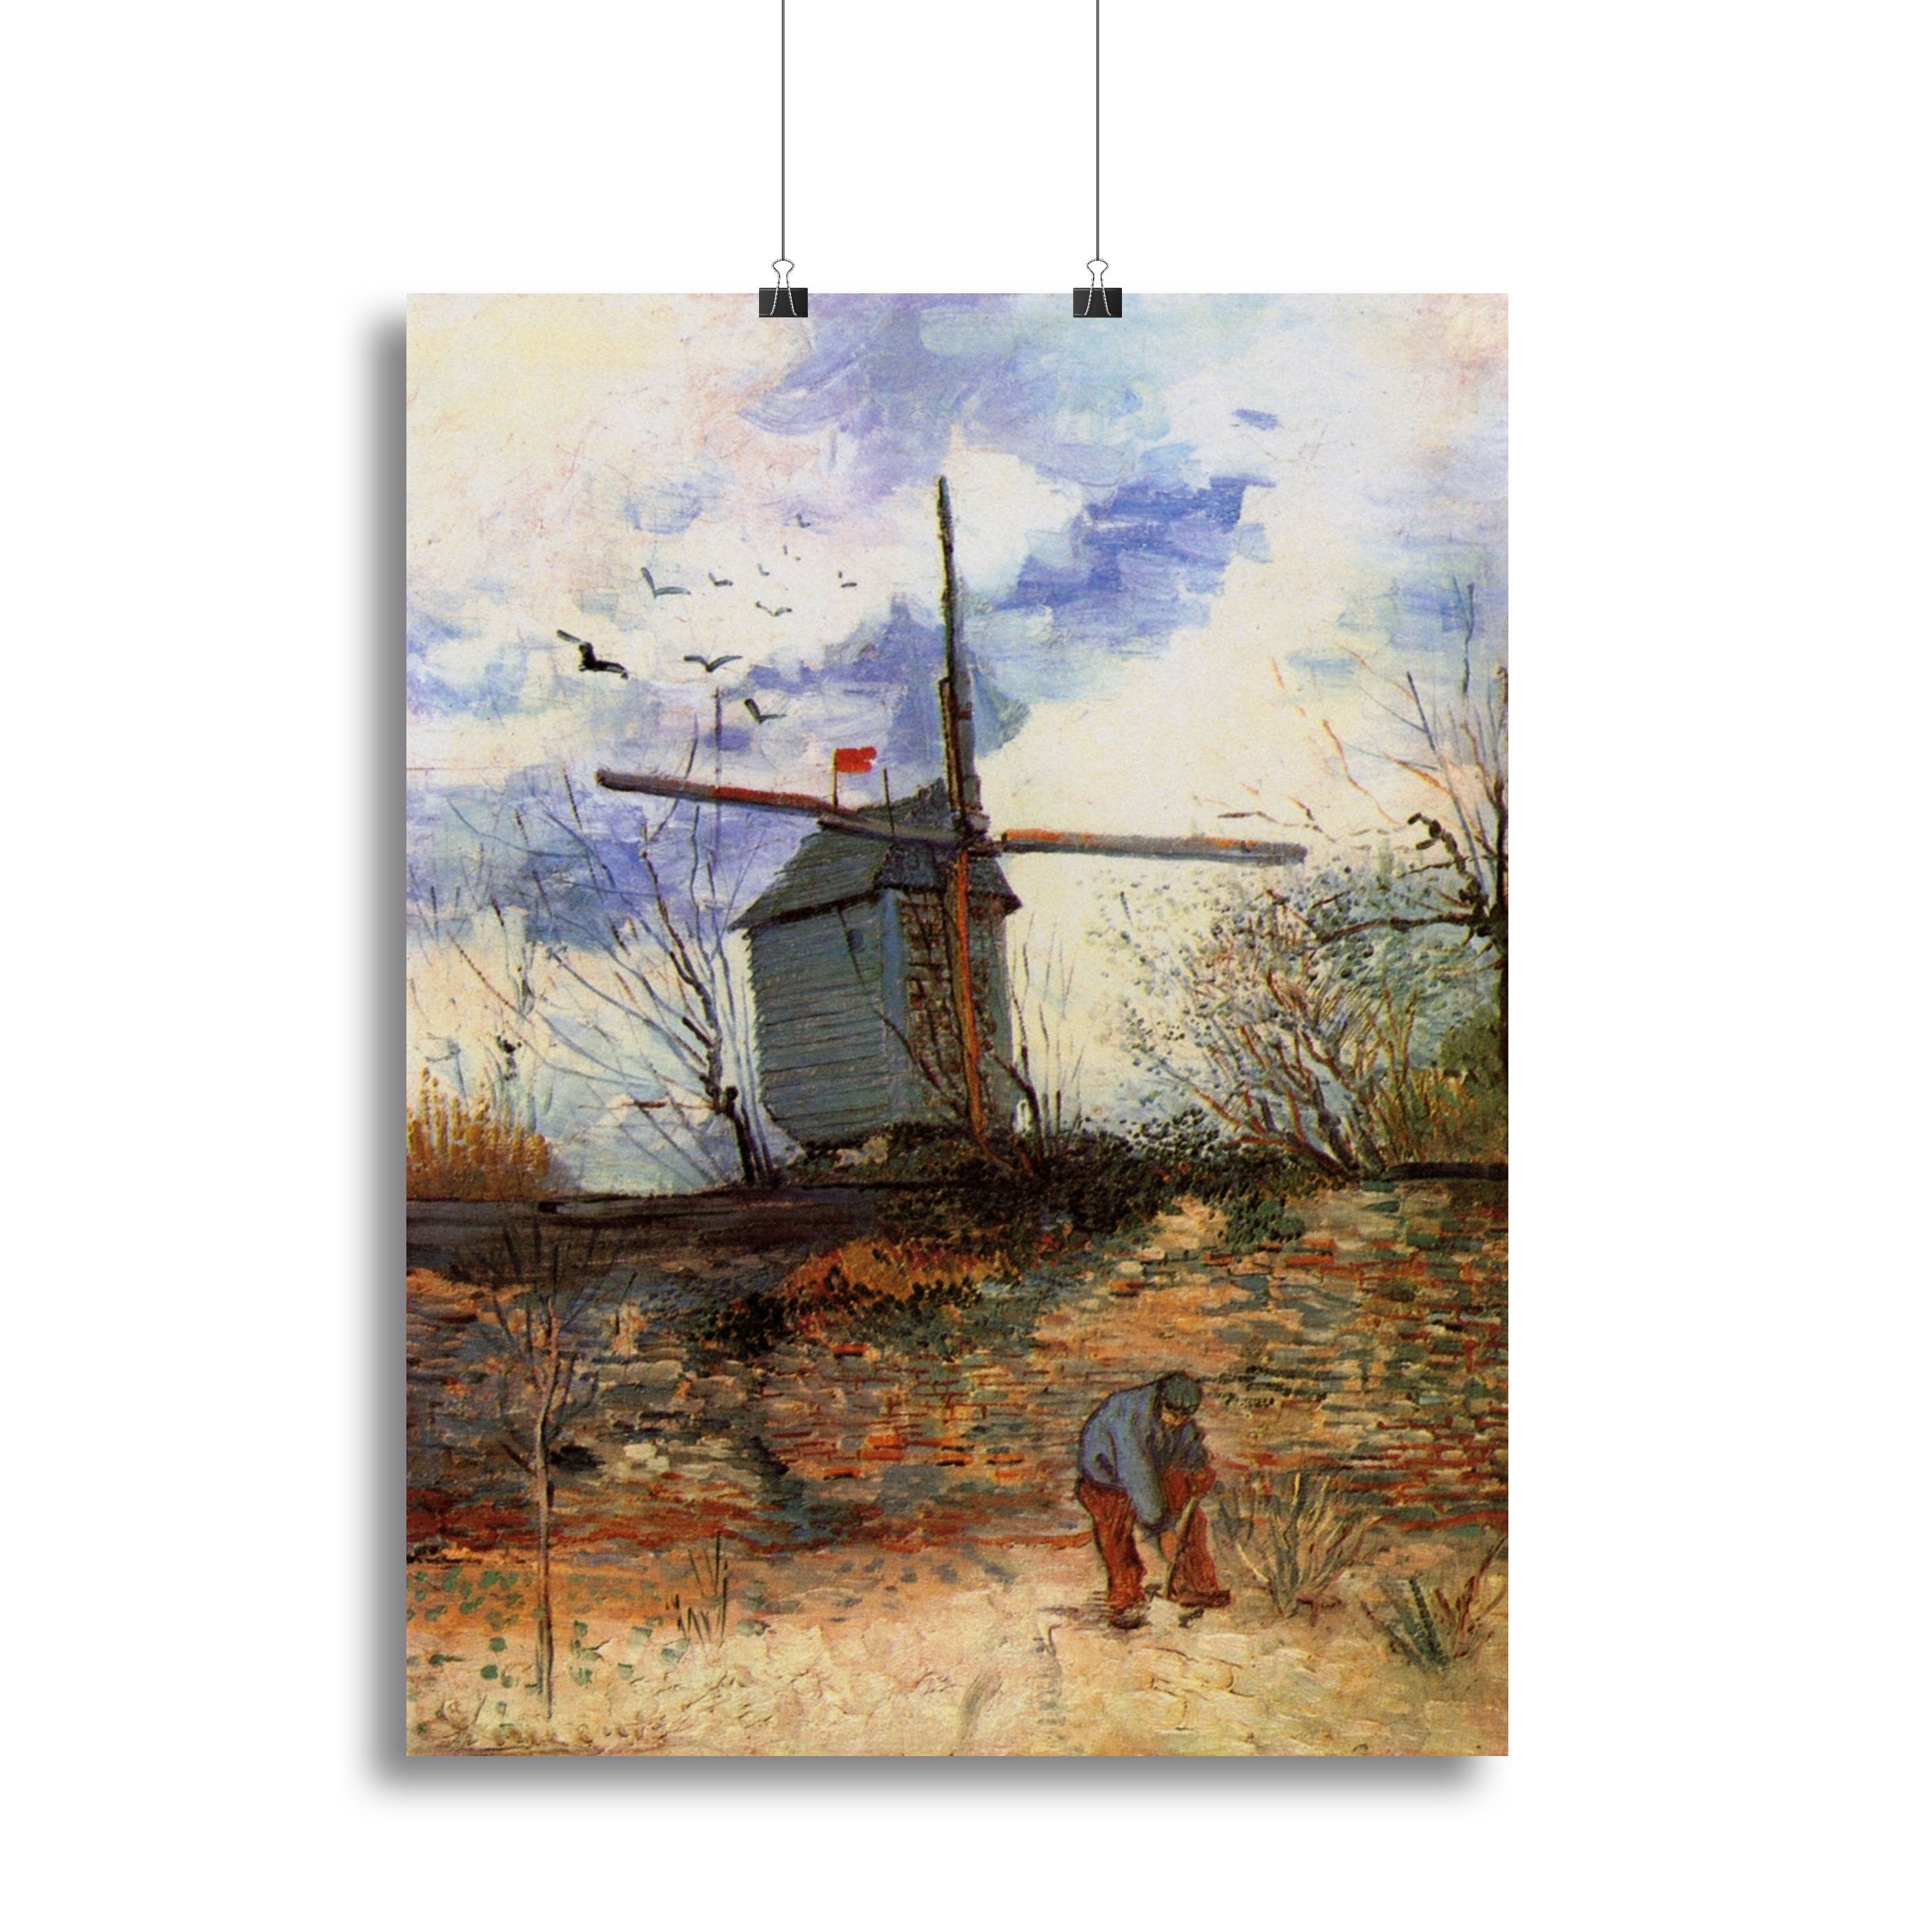 Le Moulin de la Galette 2 by Van Gogh Canvas Print or Poster